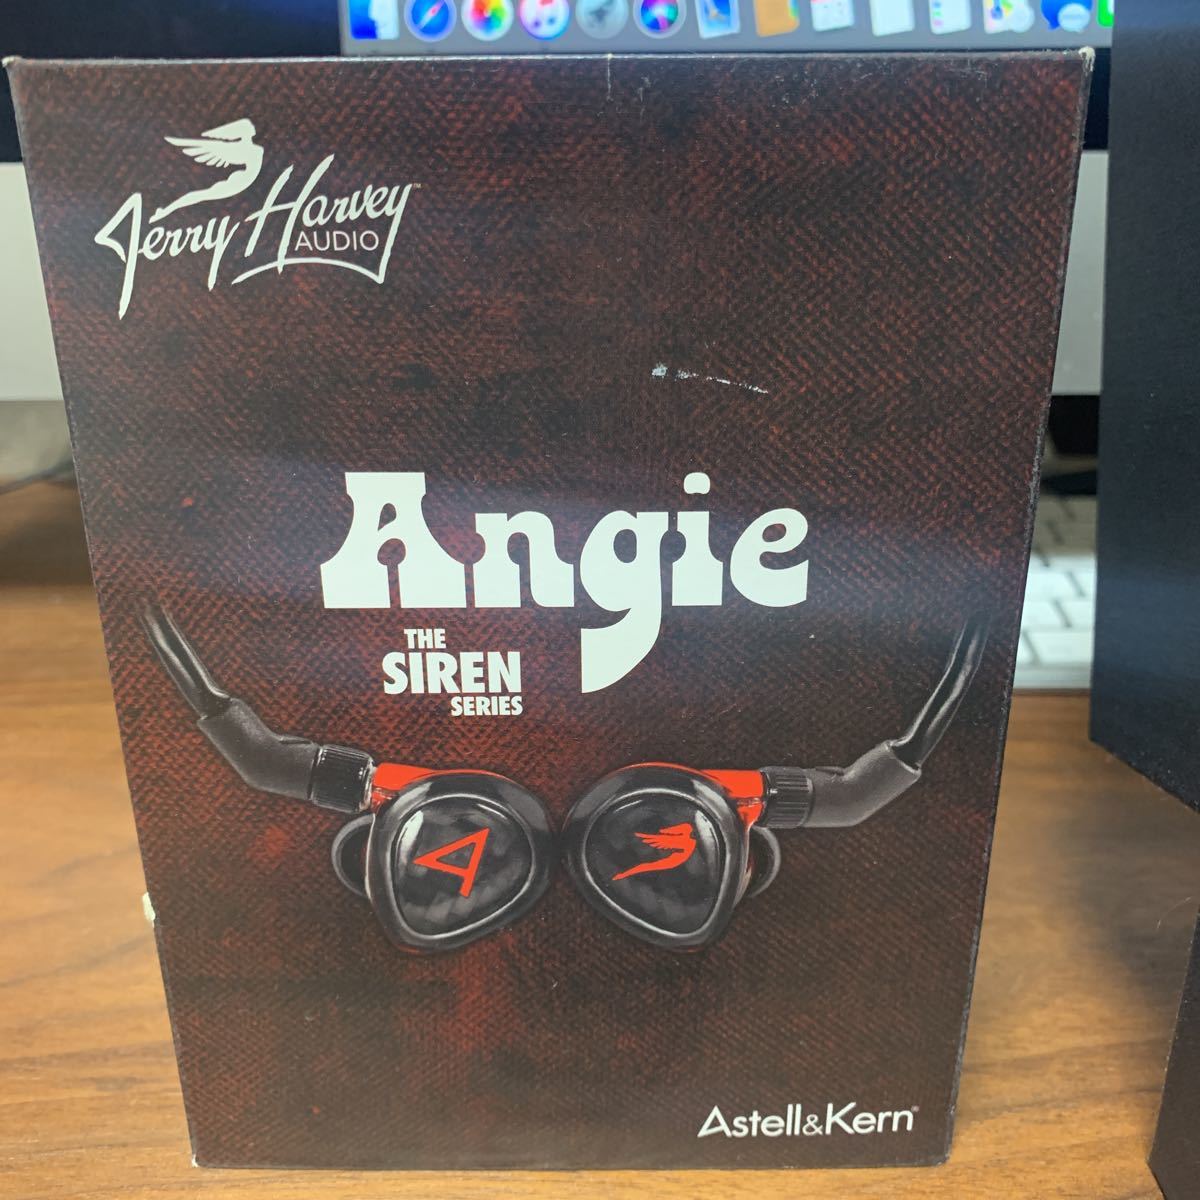 傑里哈維音頻安吉 原文:jerry harvey audio Angie